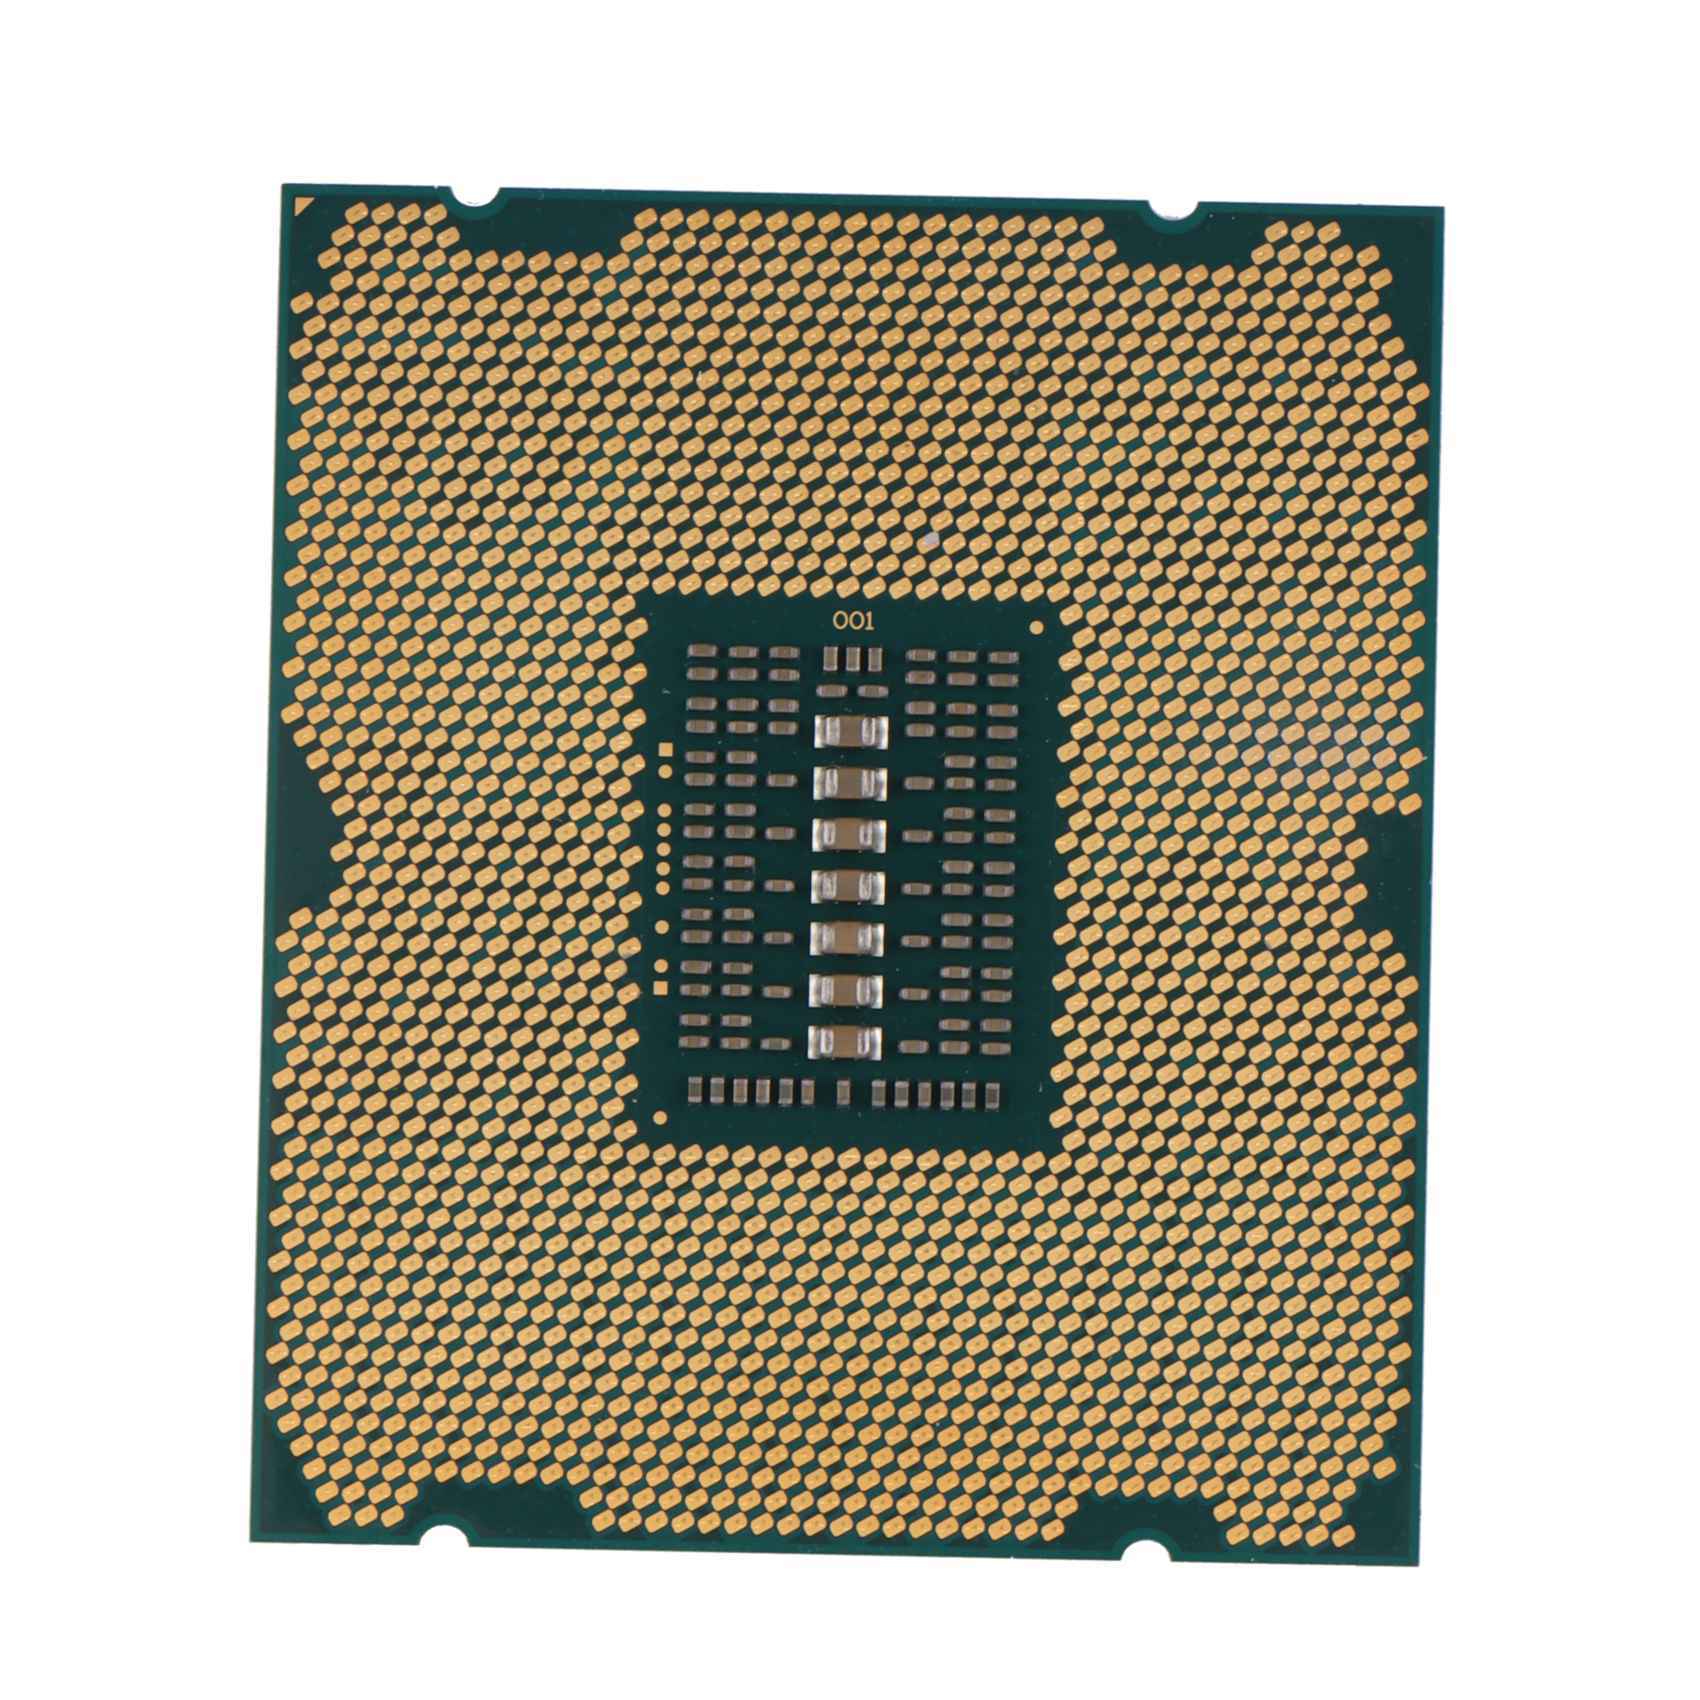 Xeon e5 v2 сокет. Intel Xeon e5-2630v2. Процессор Intel Xeon e5-1650v2. Процессор Intel Xeon e5-2620v2. E5 2630 v2.